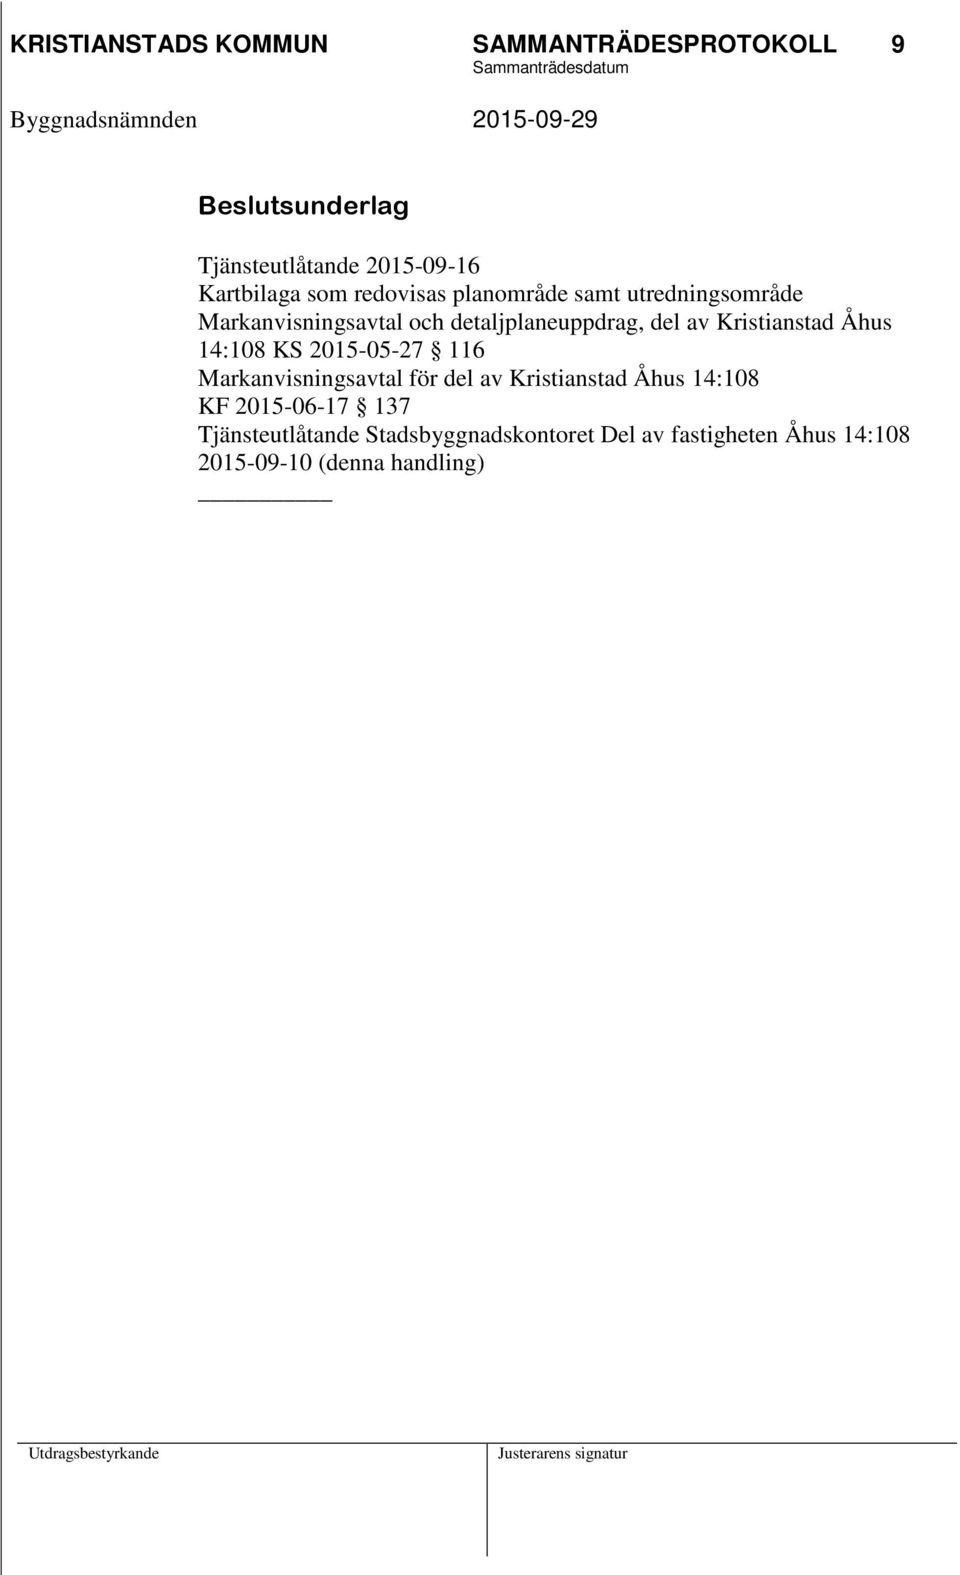 Kristianstad Åhus 14:108 KS 2015-05-27 116 Markanvisningsavtal för del av Kristianstad Åhus 14:108 KF